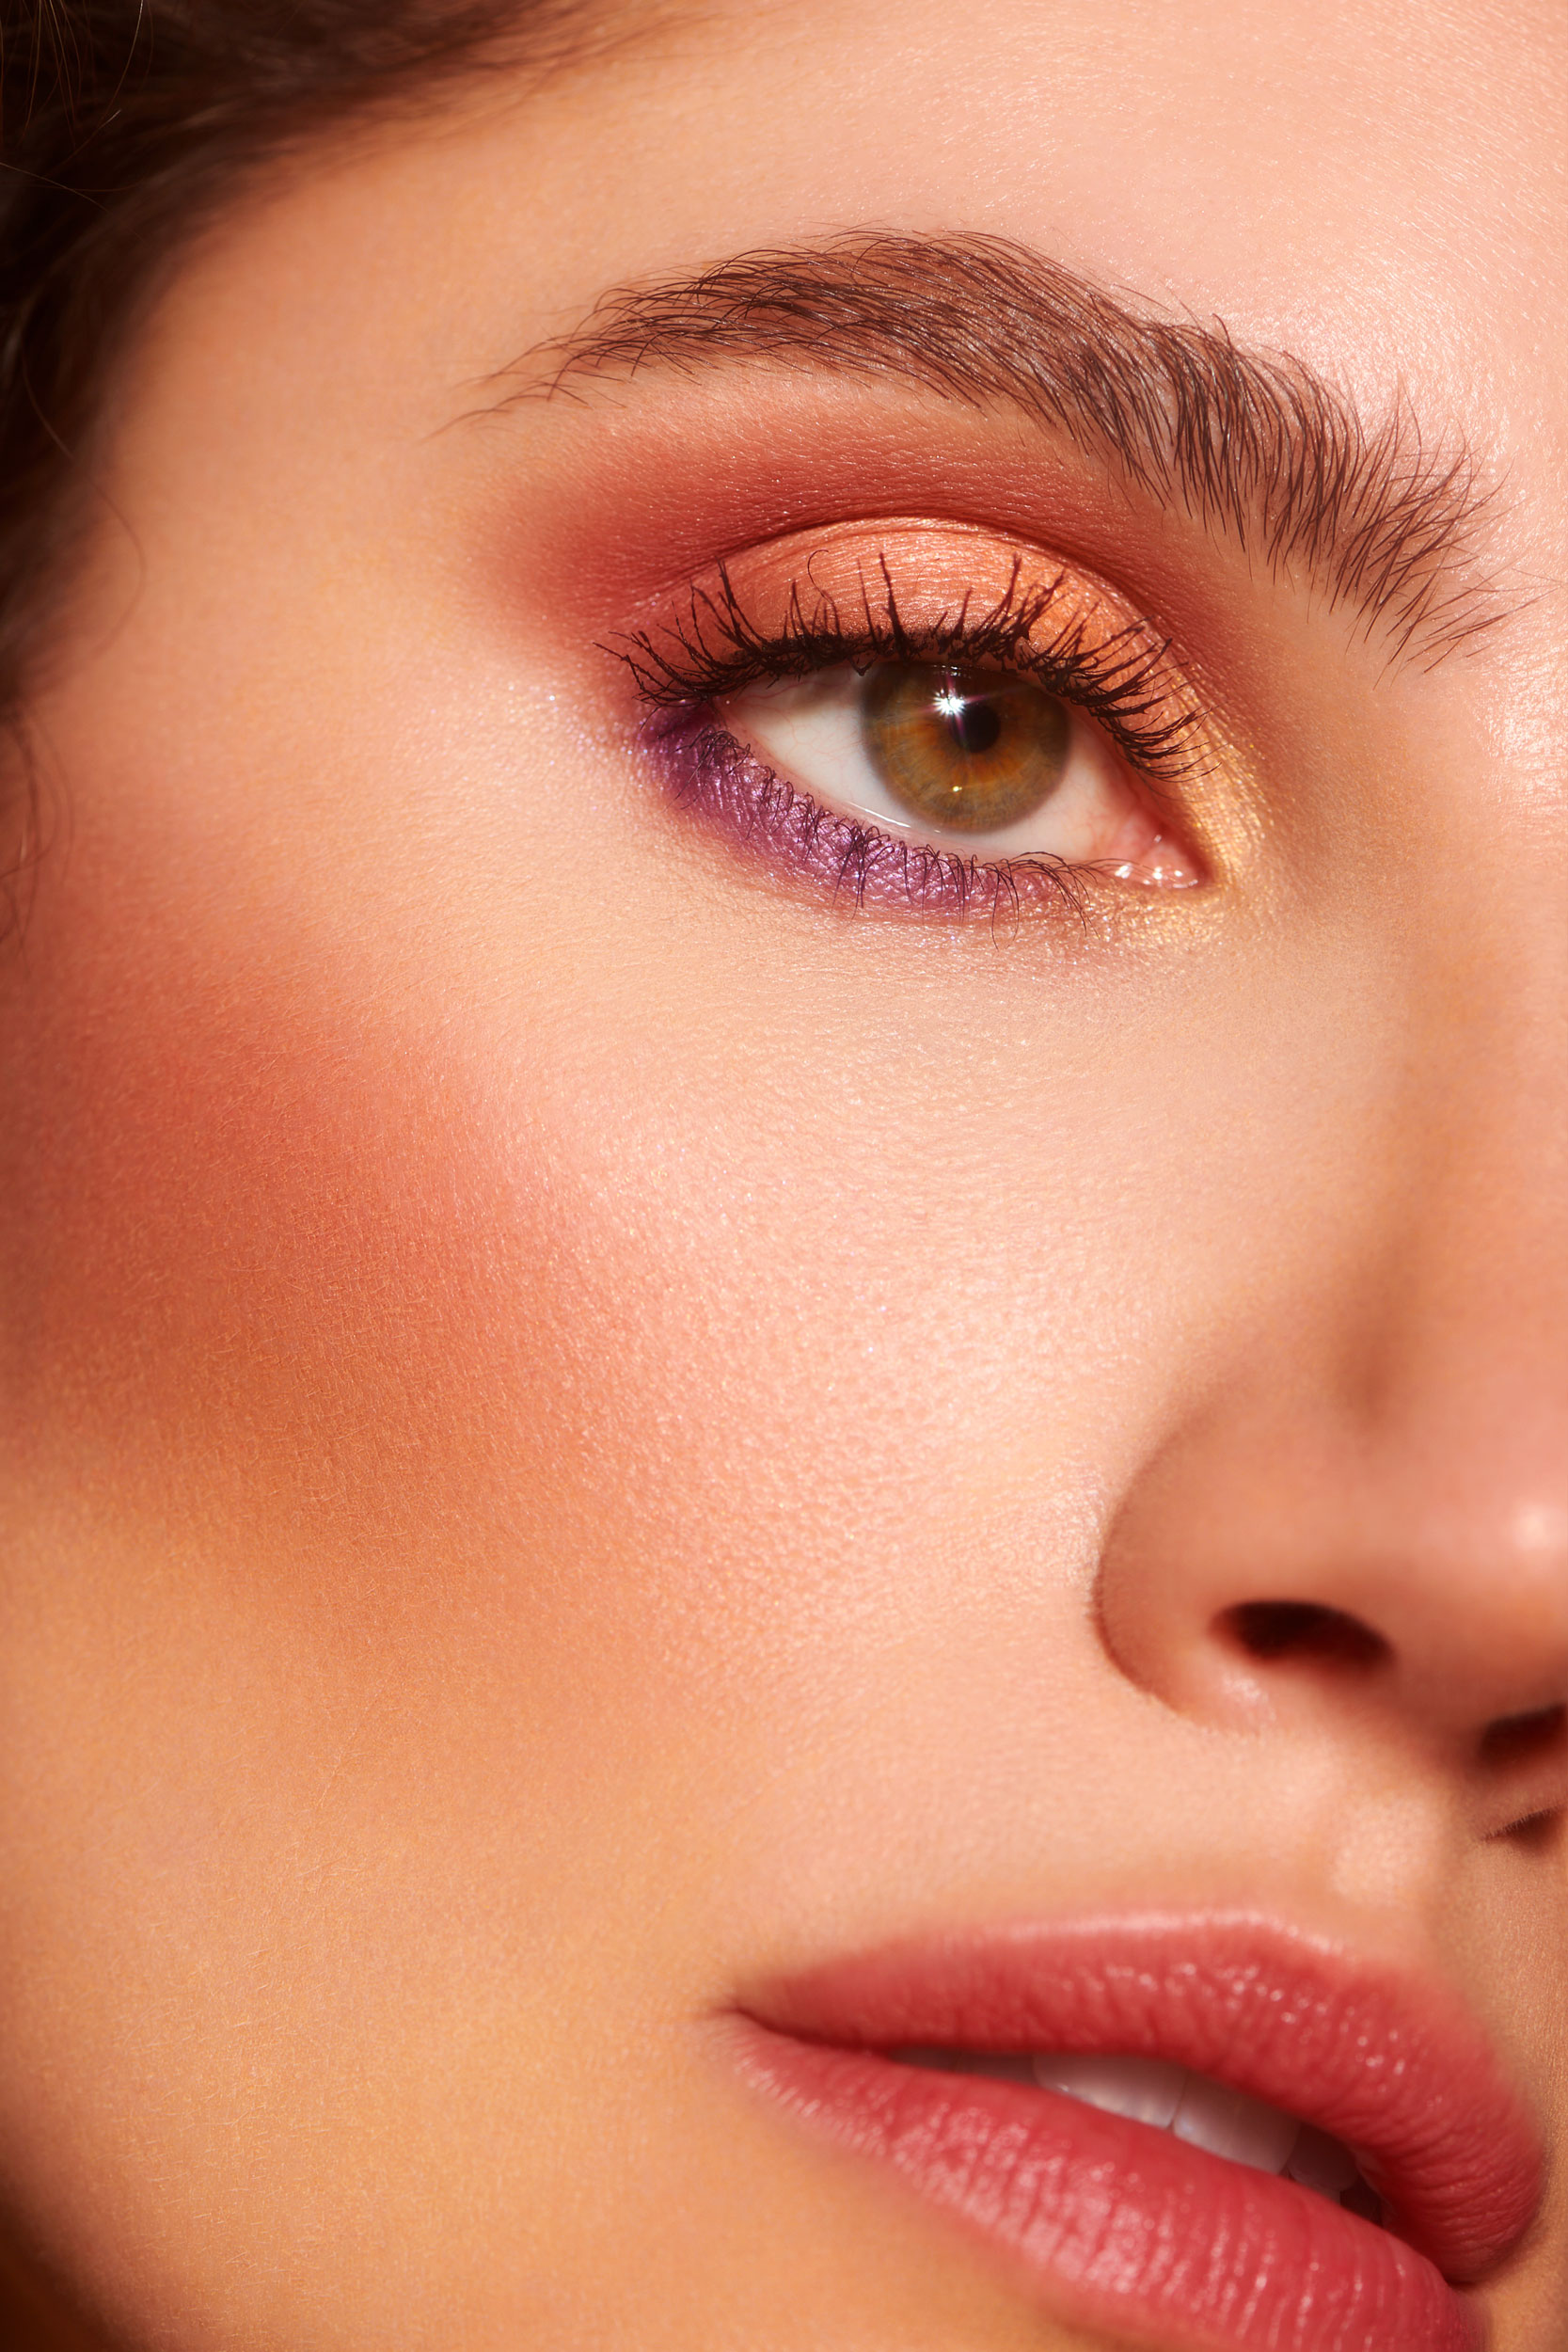 Detail image of eye makeup